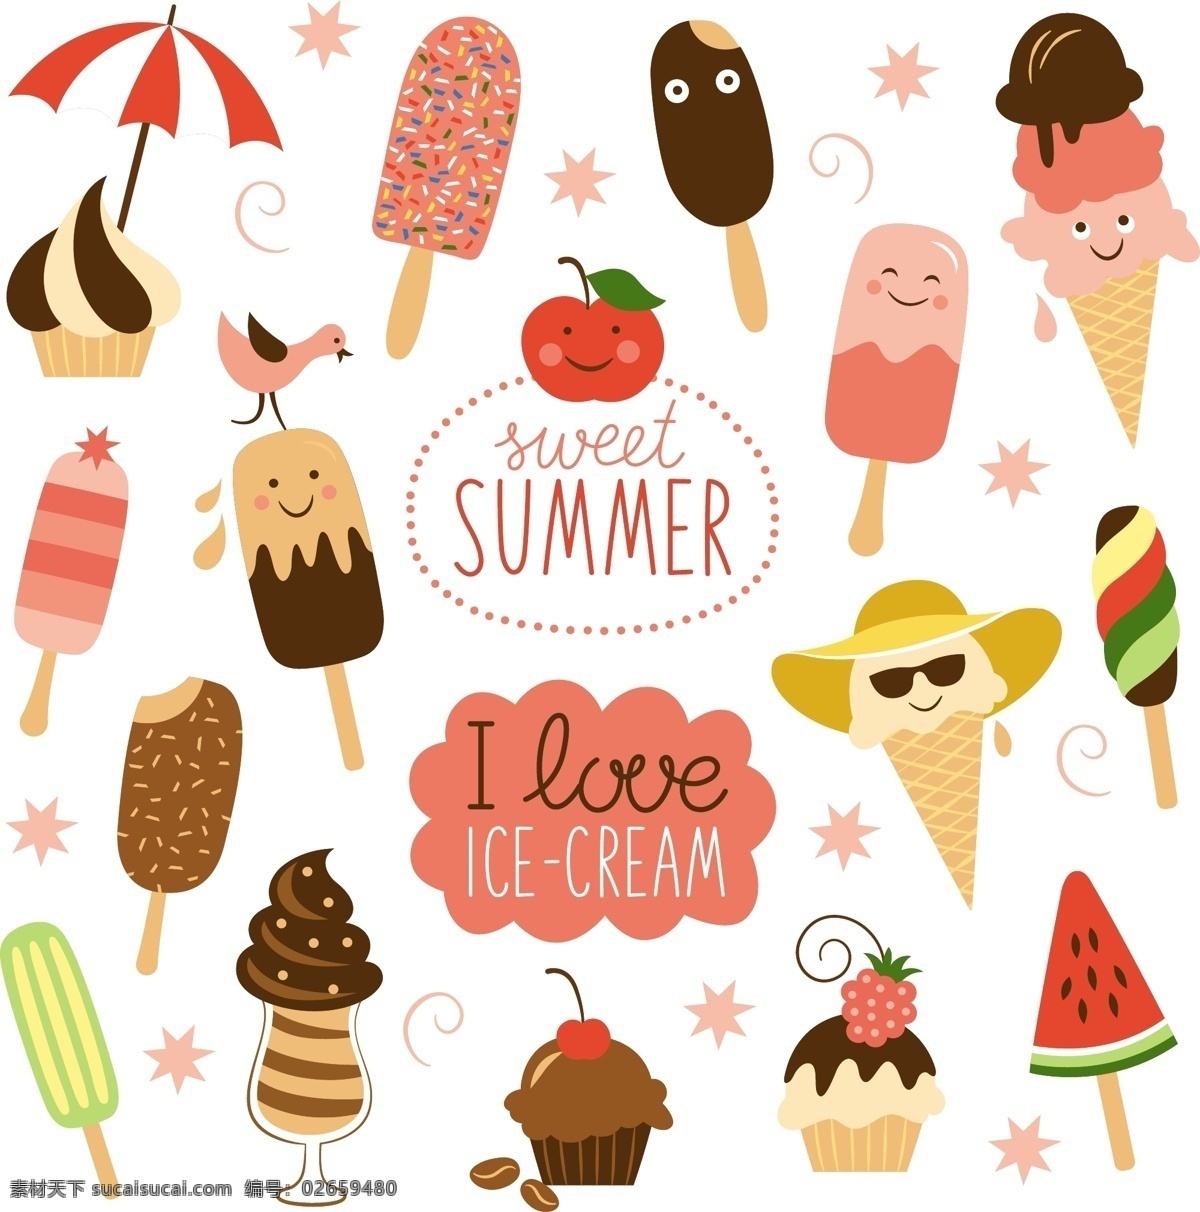 夏季 冰淇淋无缝 背景矢量 雪糕 冰淇淋 雨伞 西瓜 巧克力蛋糕 无缝背景 矢量图 eps格式 背景 底纹边框 背景底纹